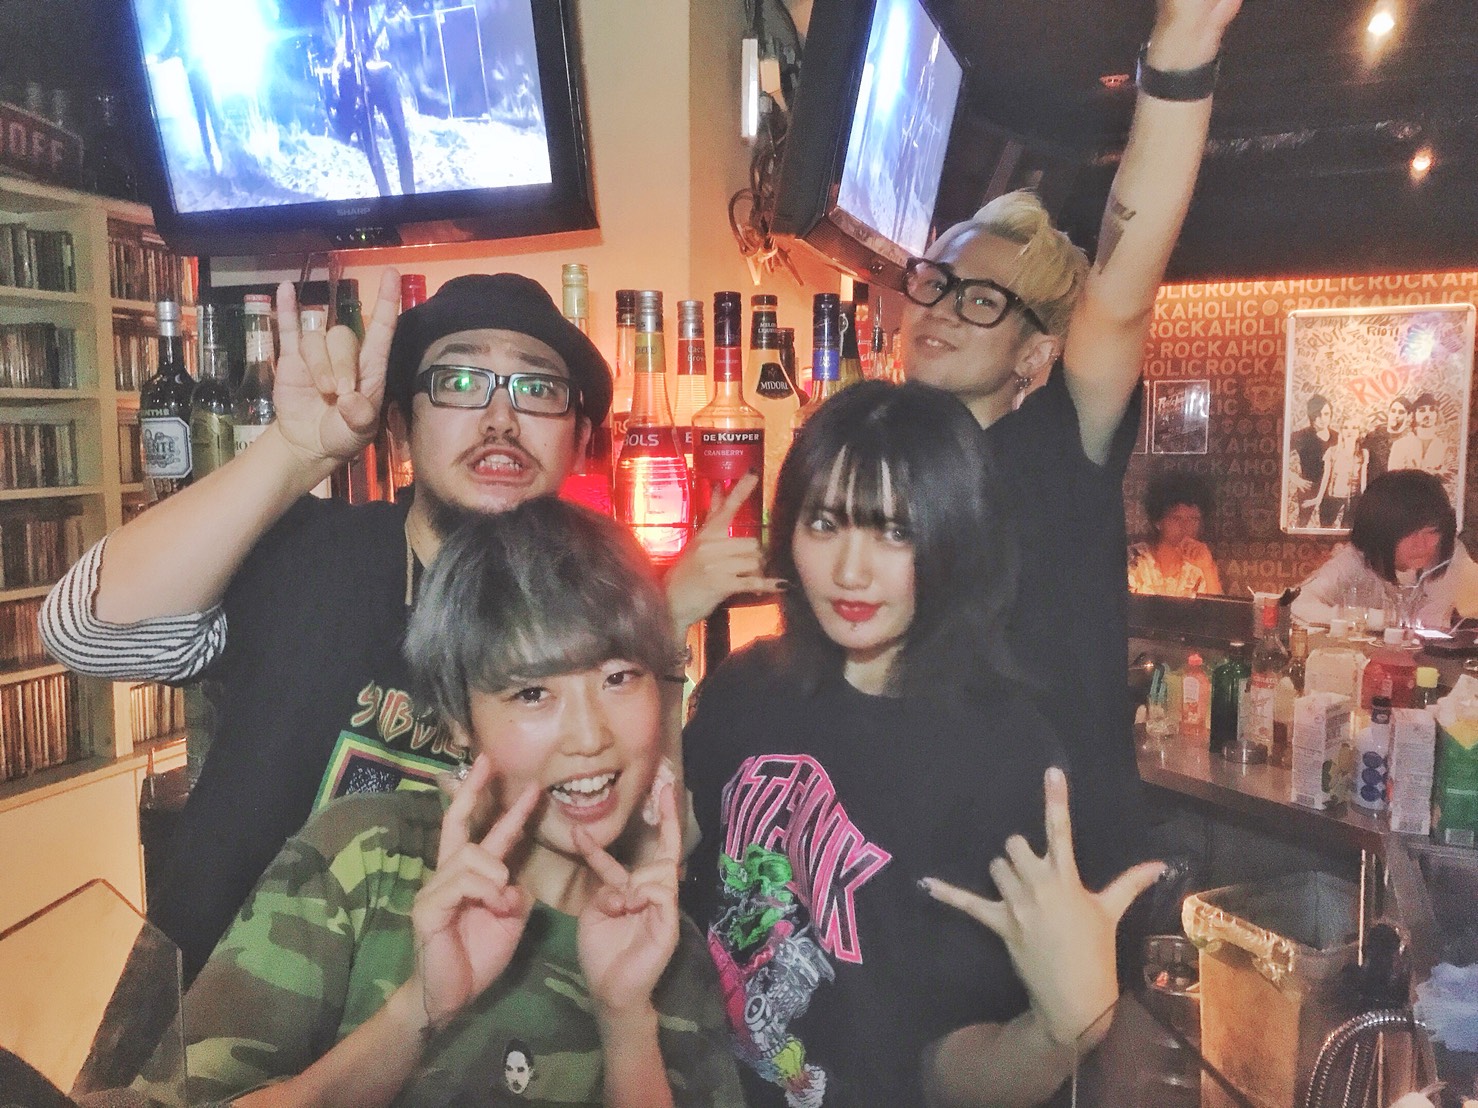 https://bar-rockaholic.jp/shibuya/blog/S__12402691.jpg